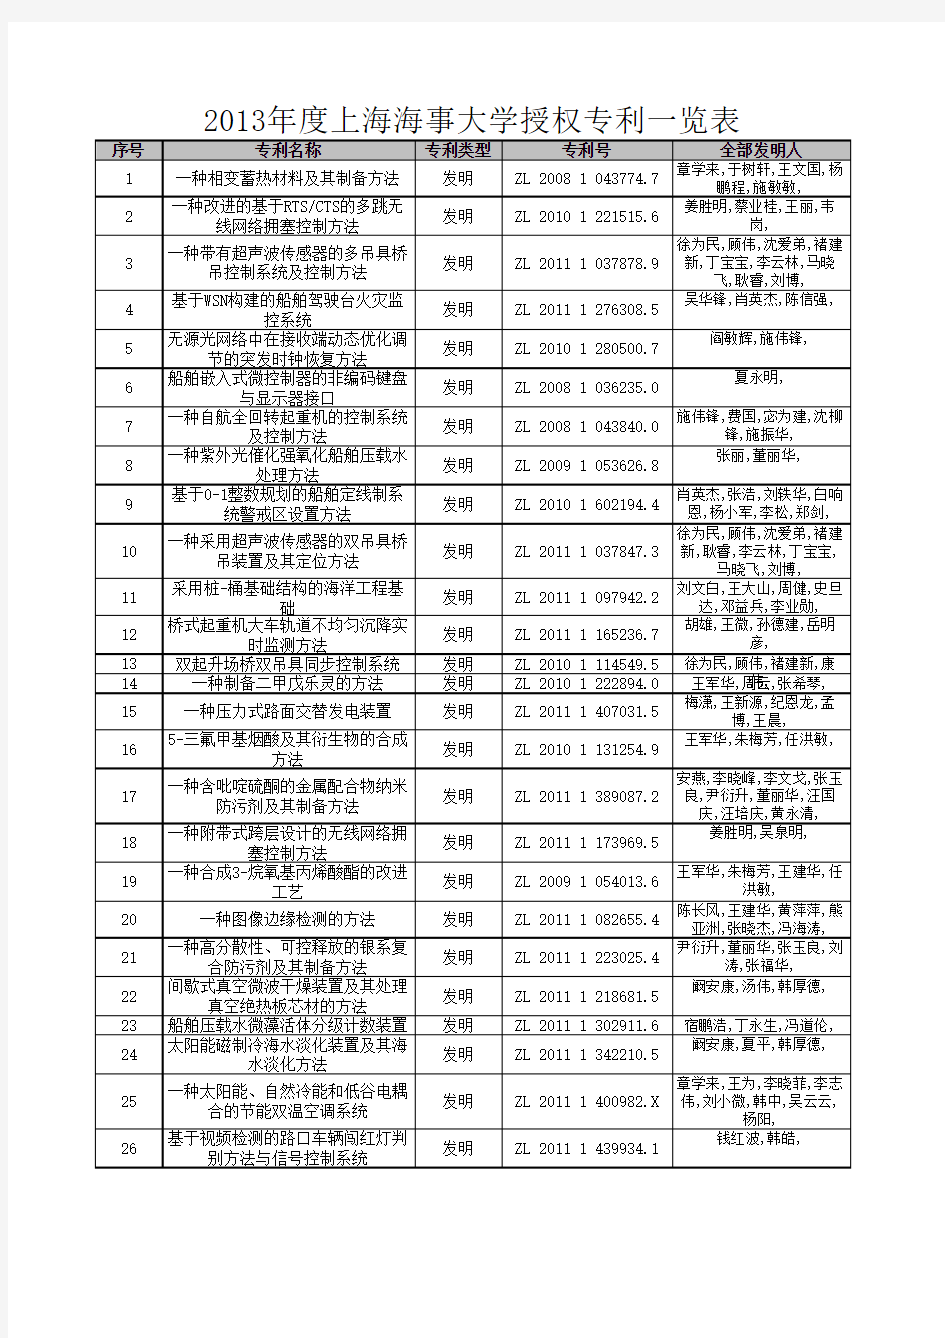 2013年度上海海事大学授权专利一览表